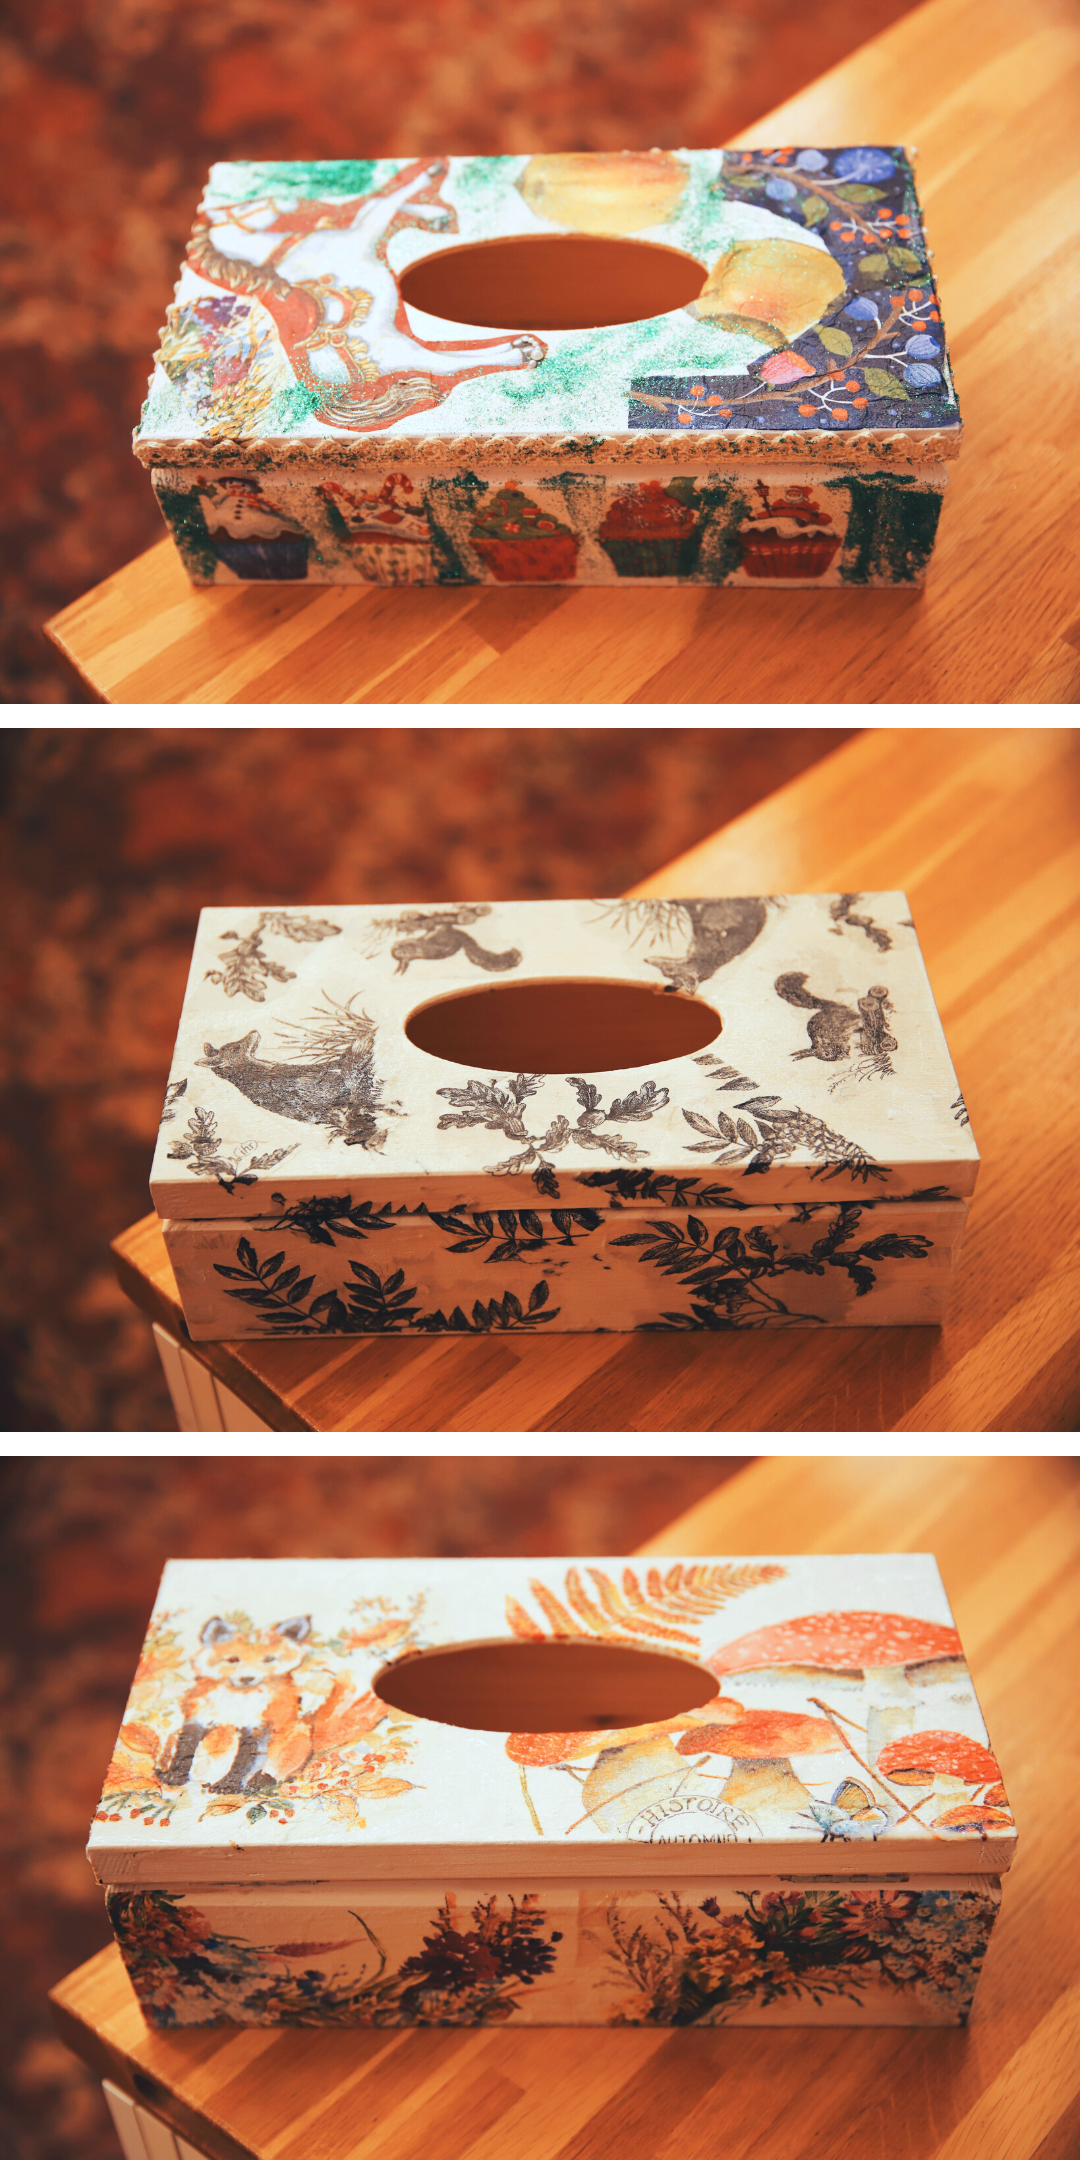 kolaż z 3 zdjęć przedstawiający ozdobione drewniane serwetniki podczas warsztatów decoupage w wypożyczalni nr 16